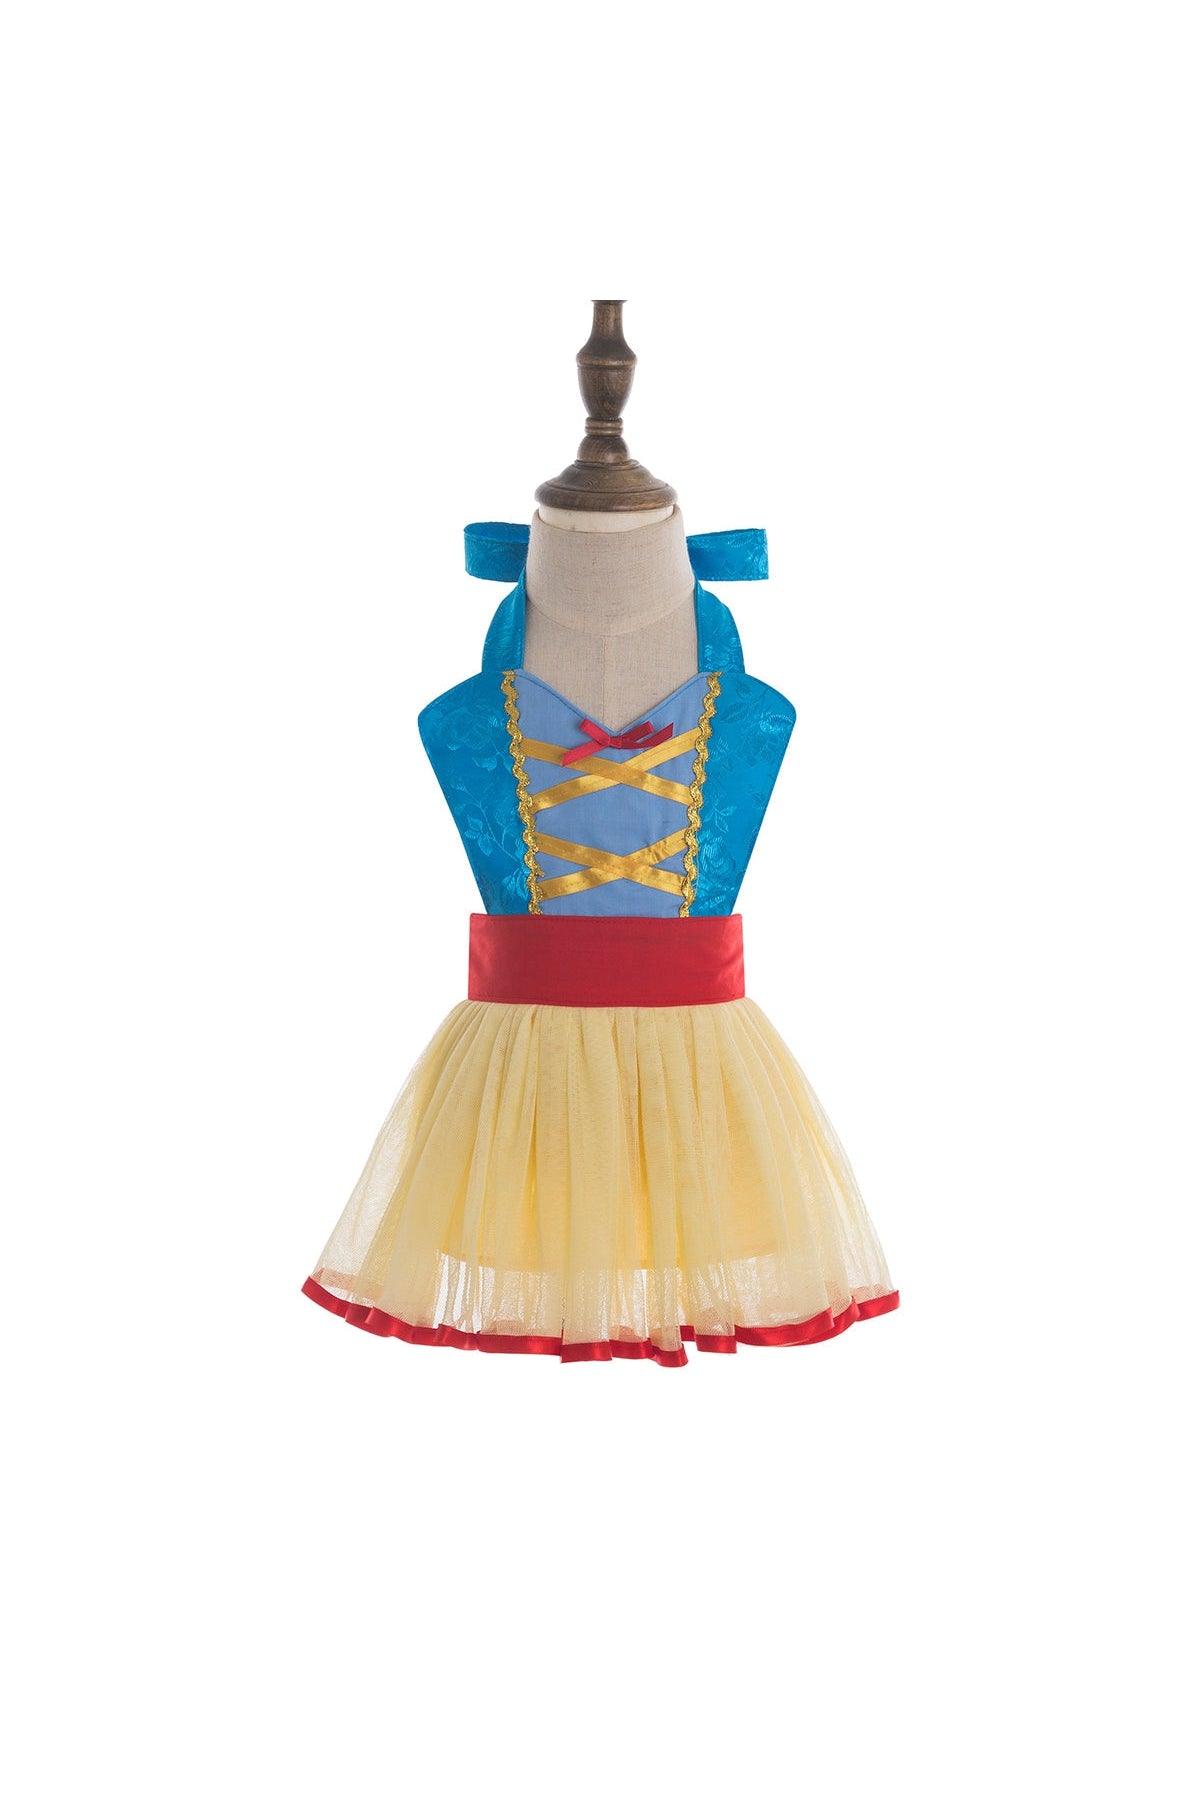 Apron Mini - Princess inspired - Snow White